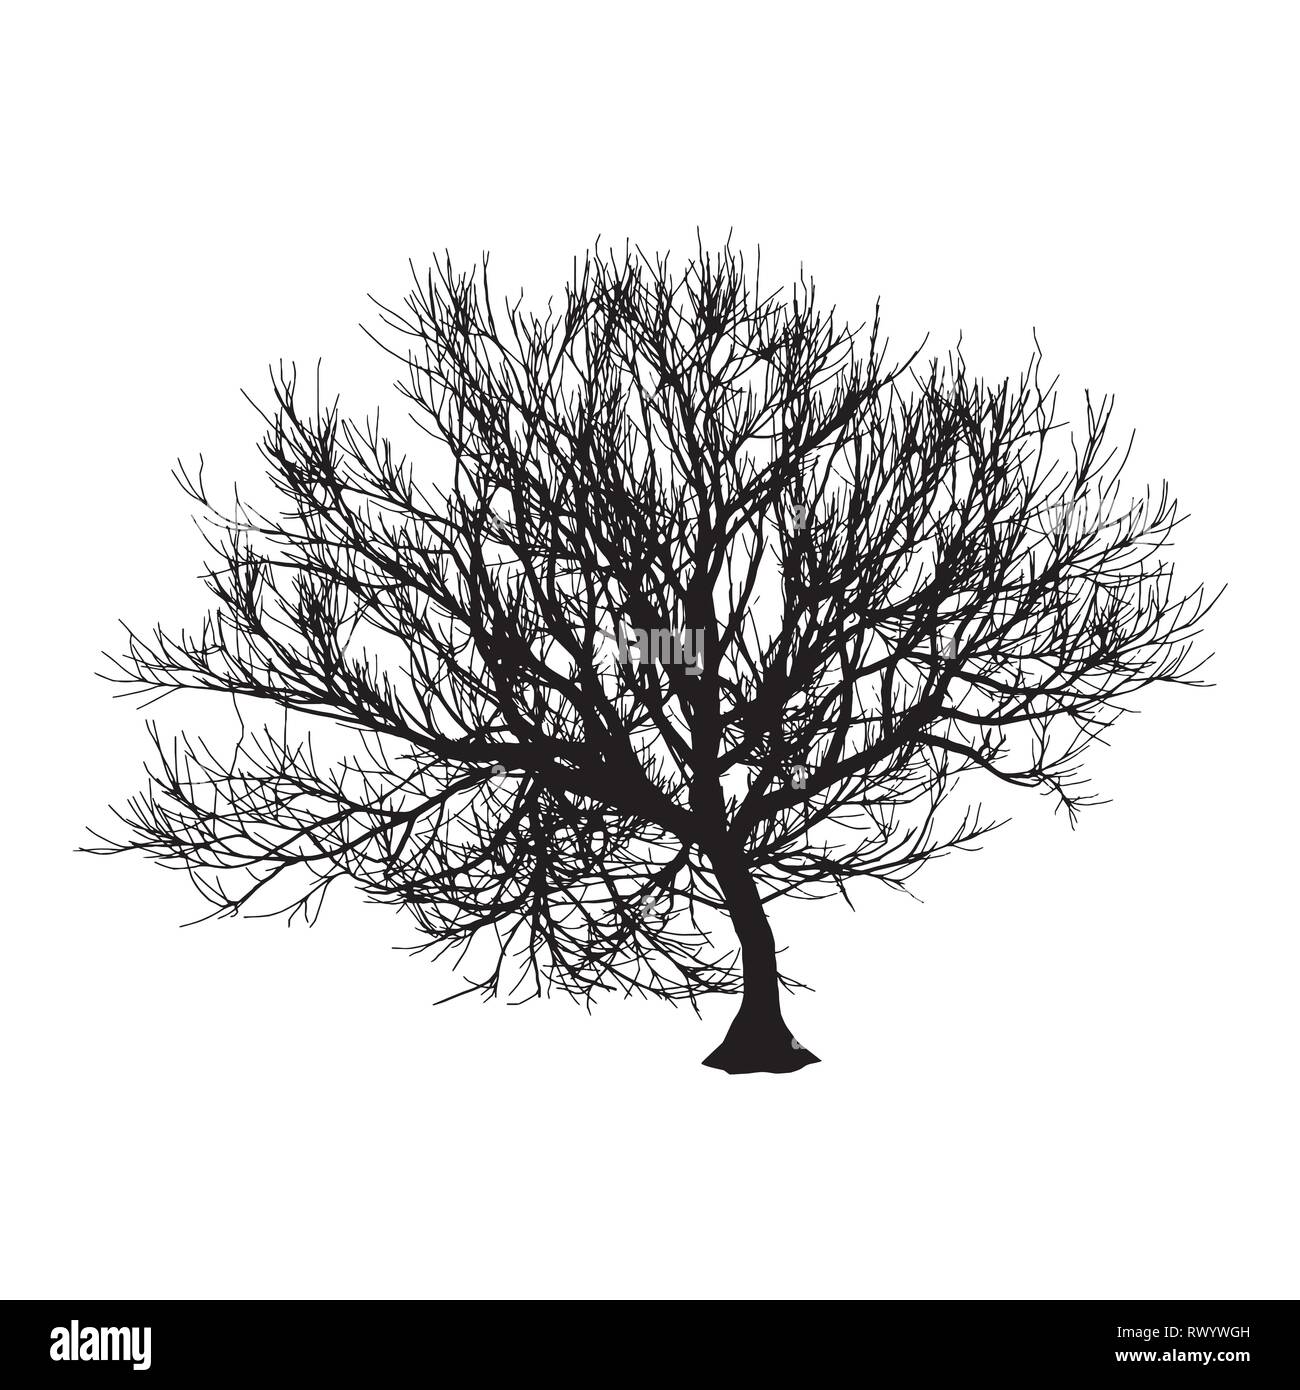 Schwarz trockenen Baum Winter oder Herbst Silhouette auf weißem Hintergrund. Vector EPS 10 Abbildung Stock Vektor